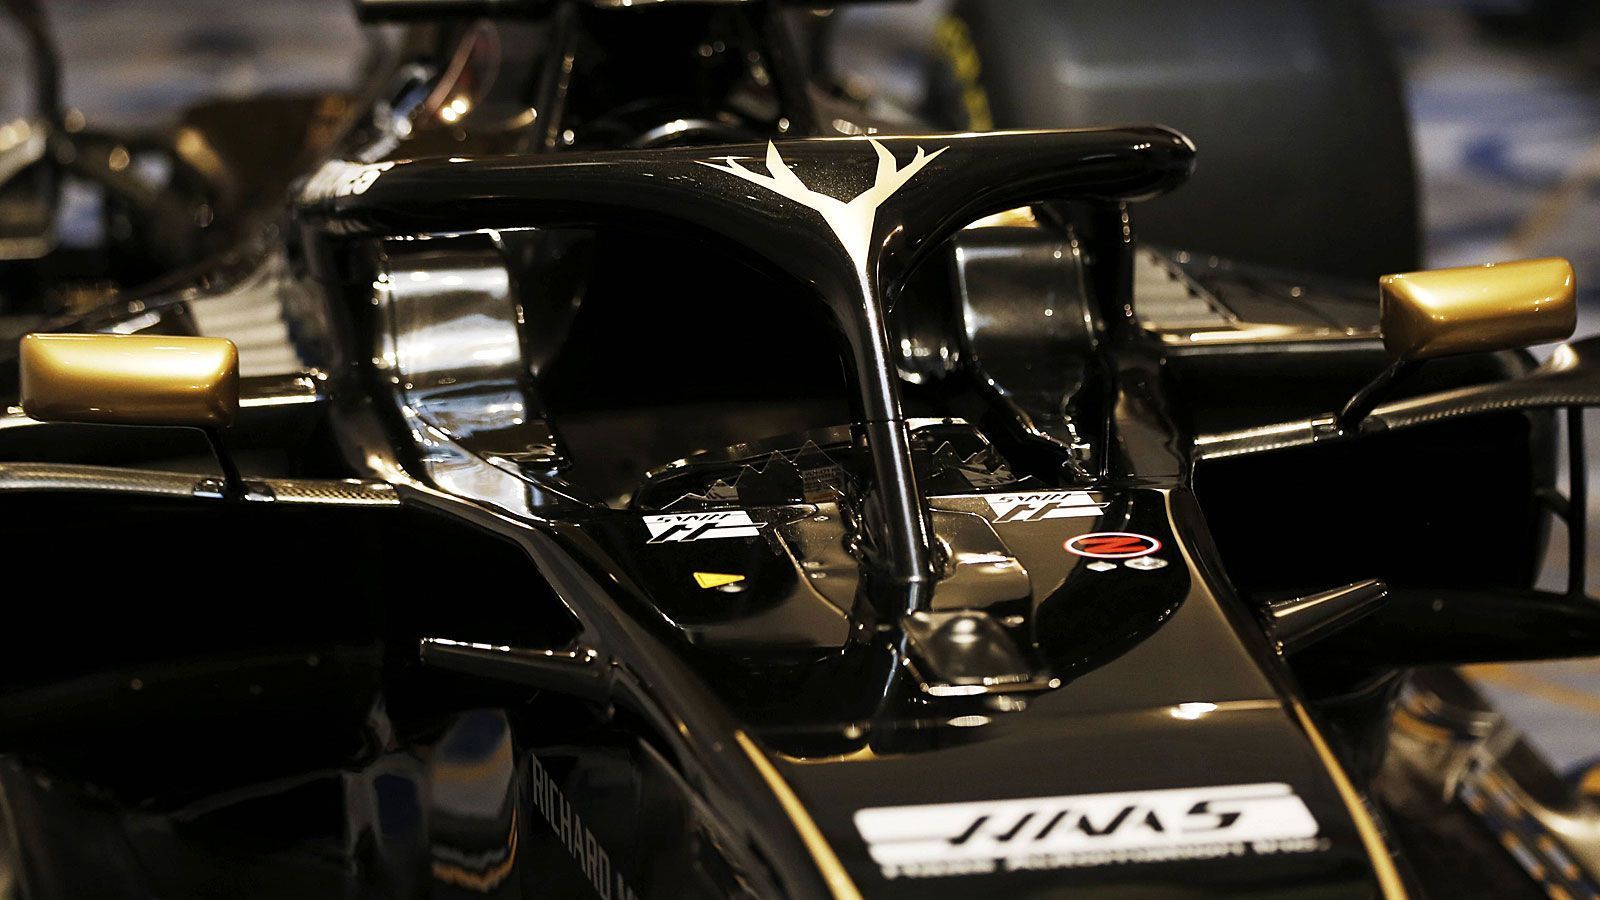 
                <strong>Formel-1-Autos 2019: Rich Energy Haas F1 Team</strong><br>
                Unter dem Heck schlummert auch 2019 ein Ferrari-Motor. Auf Altbewährtes setzt das Team auch bei der Fahrerpaarung: Der Däne Kevin Magnussen und Romain Grosjean aus Frankreich bilden im dritten Jahr nacheinander das Gespann.
              